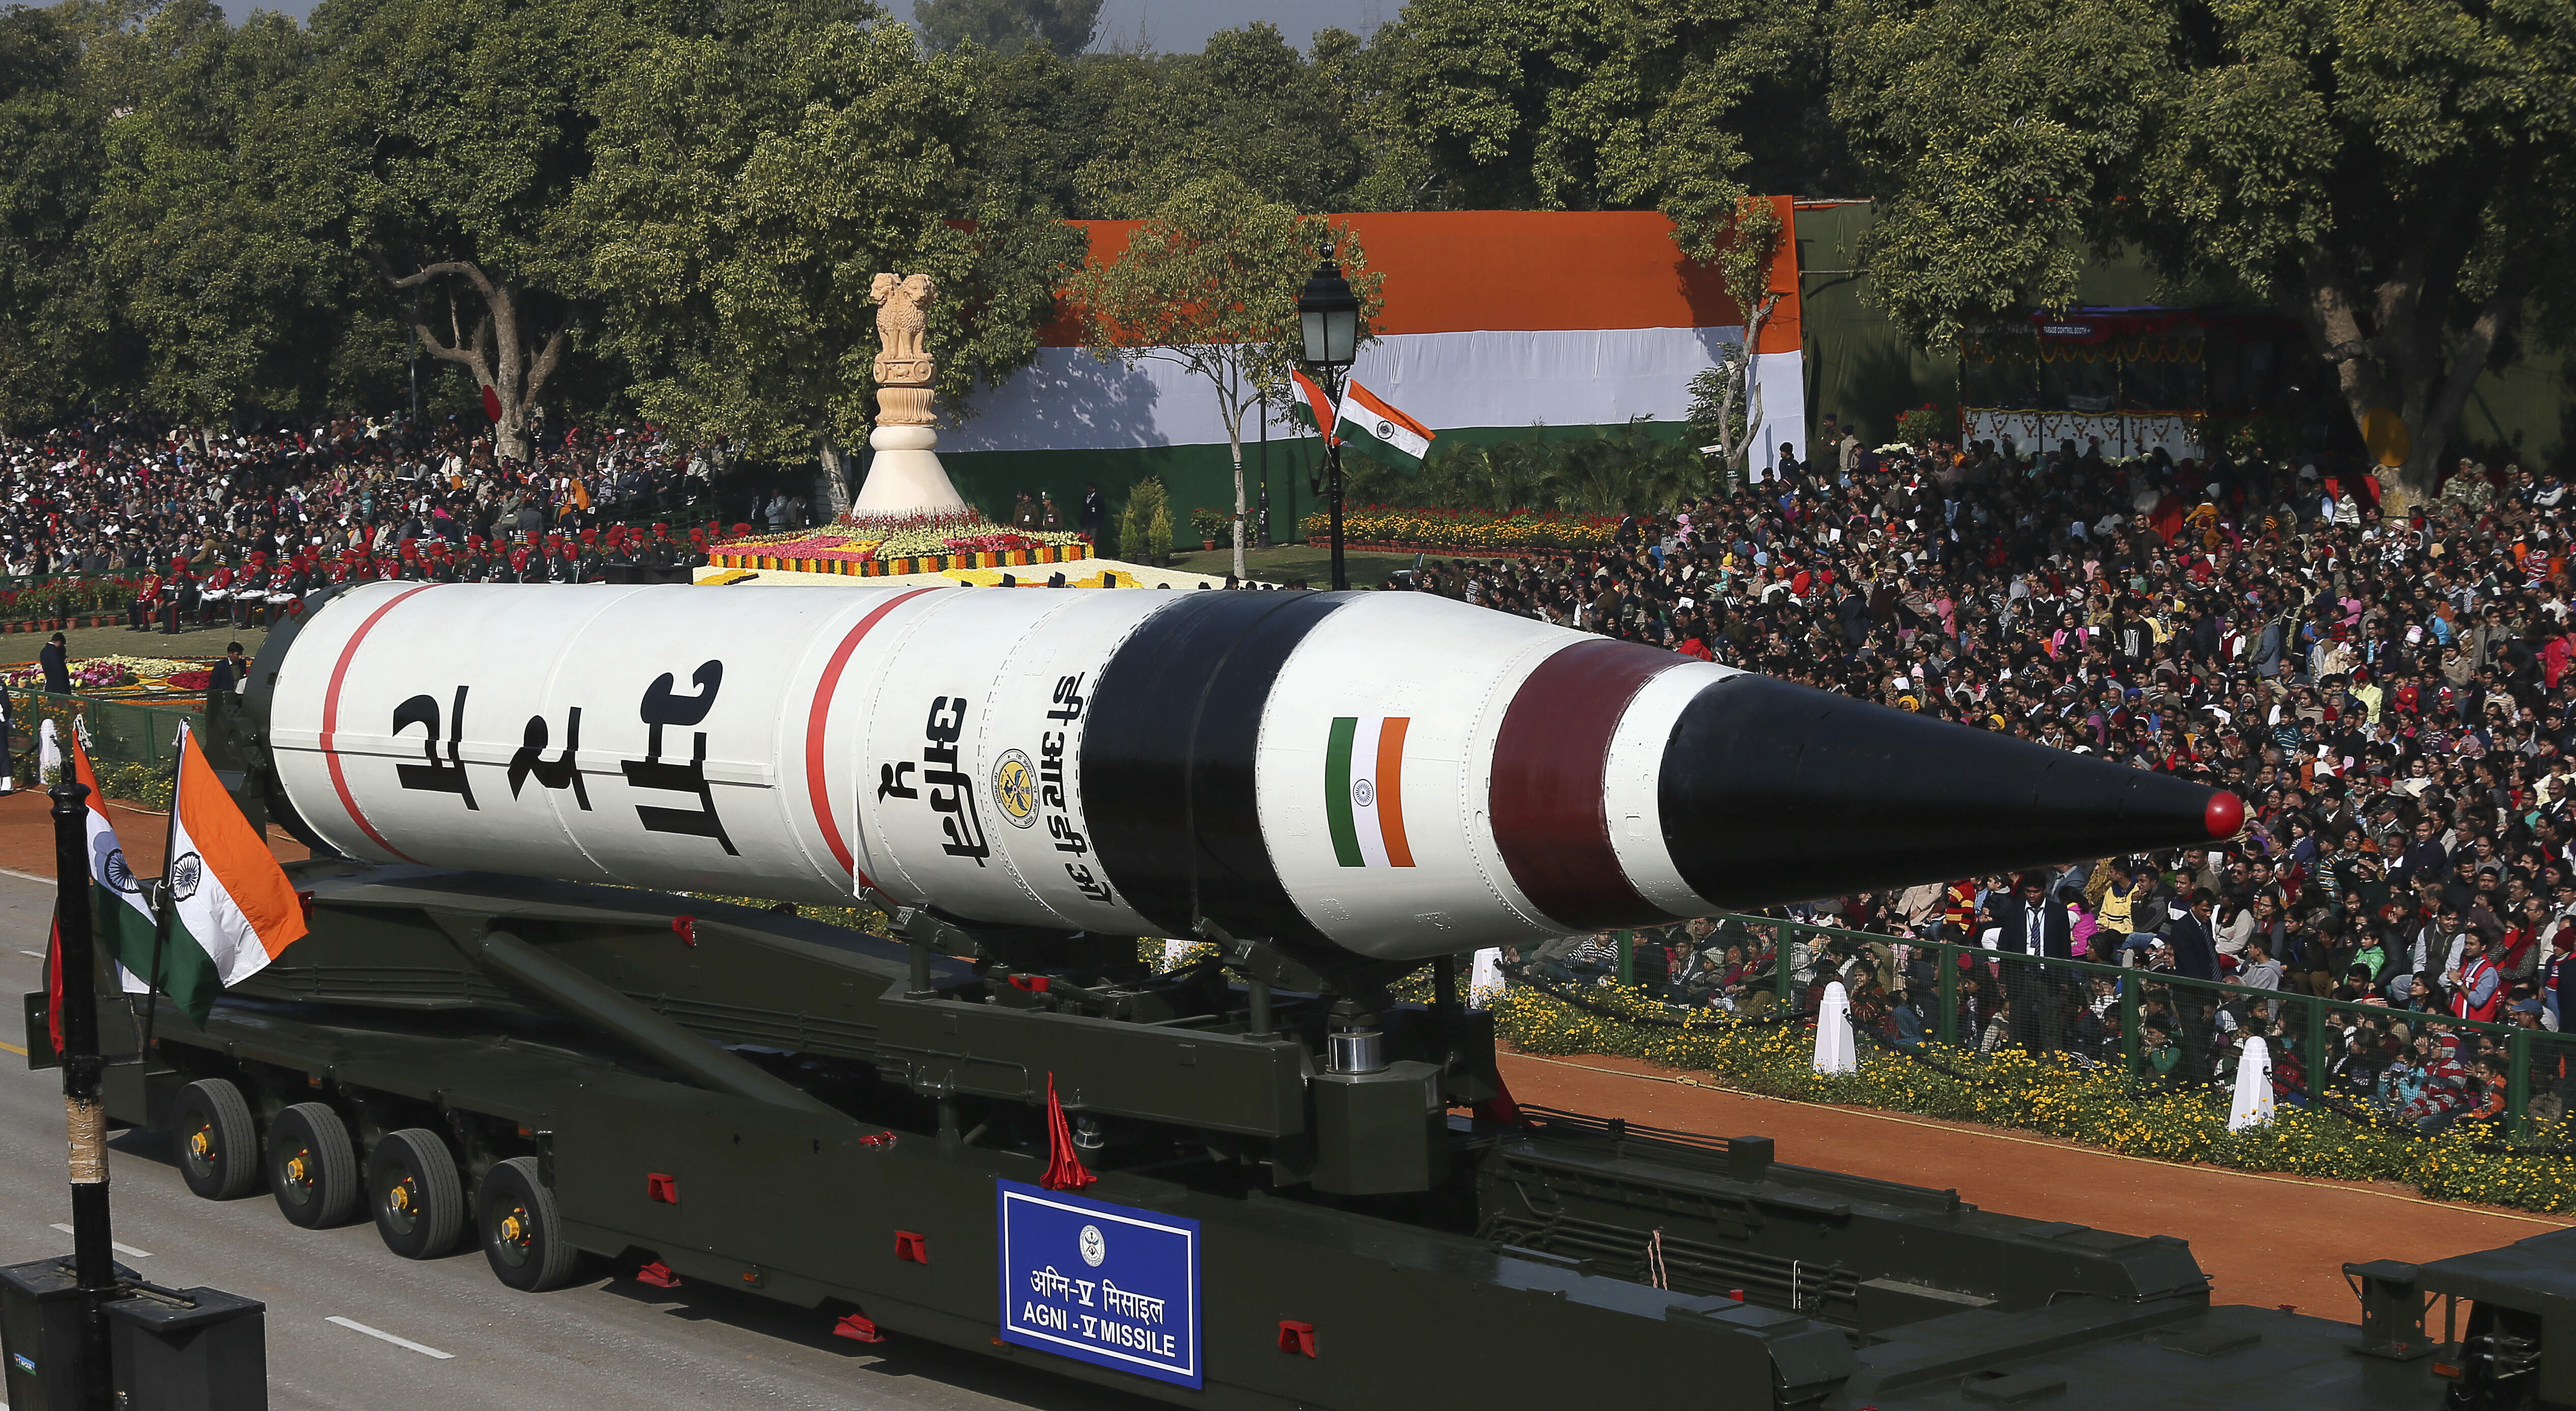 Rudal balistik jarak jauh Agni-V dipajang saat parade hari kemerdekaan di New Delhi, India.